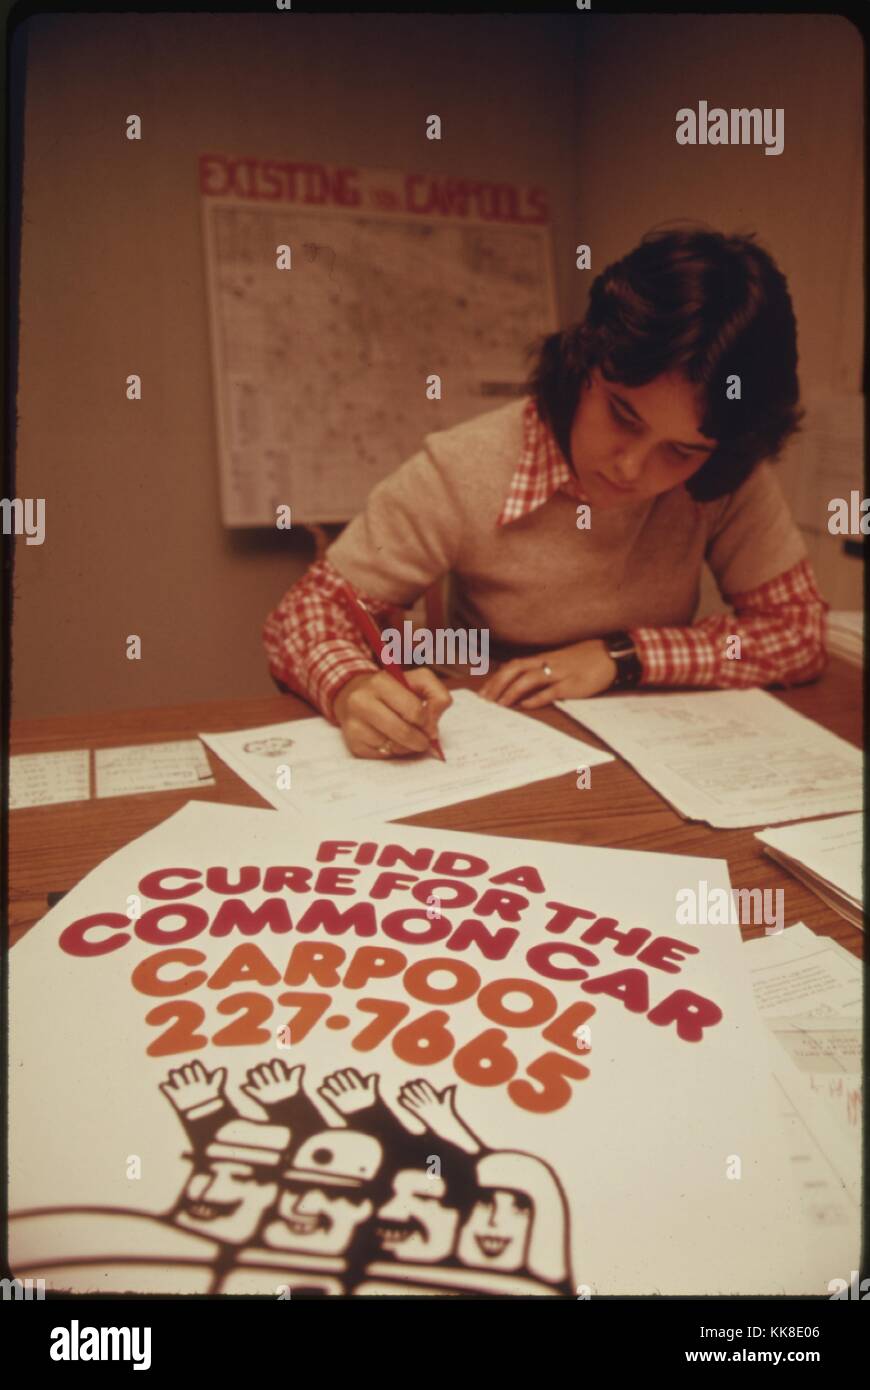 Farbfoto einer Frau ausfüllen Schreibarbeit am Schreibtisch, mit einem Schild mit der Aufschrift "Finde ein Heilmittel für die gemeinsamen Auto, Fahrgemeinschaft', 1974. Mit freundlicher Genehmigung der nationalen Archive. Stockfoto